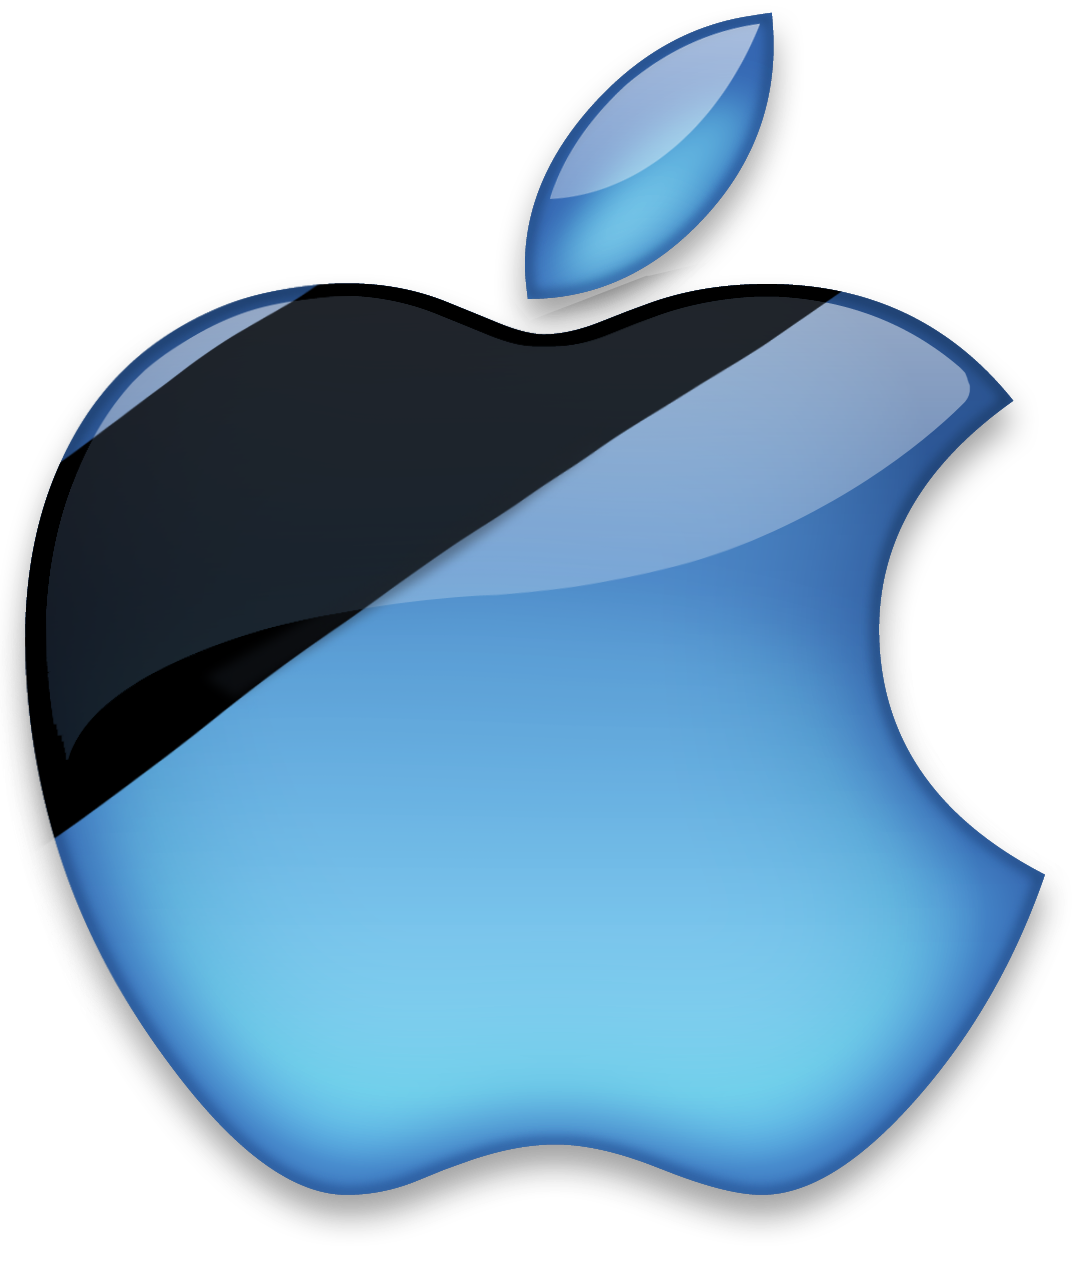 new mac cosmetics logo transparent png #6115